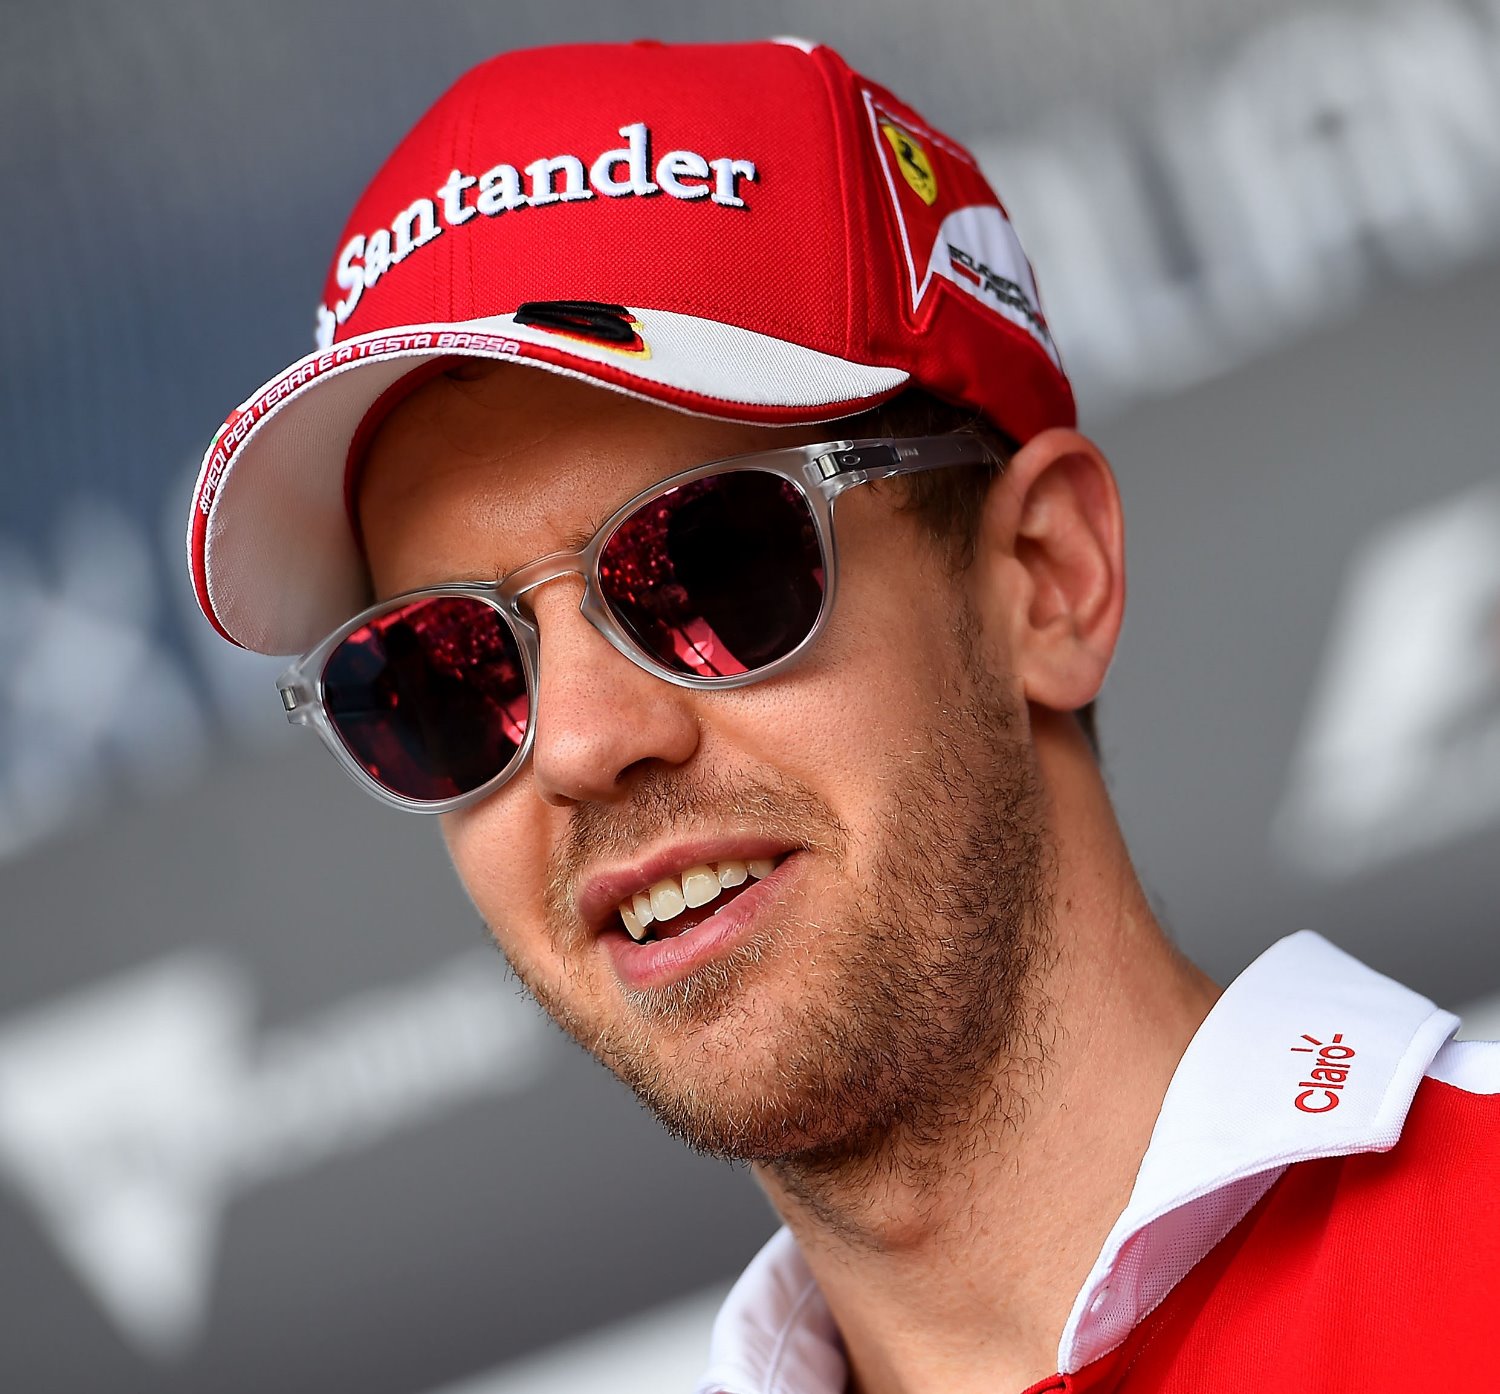 Sebastian Vettel has points lead, but can he keep it?